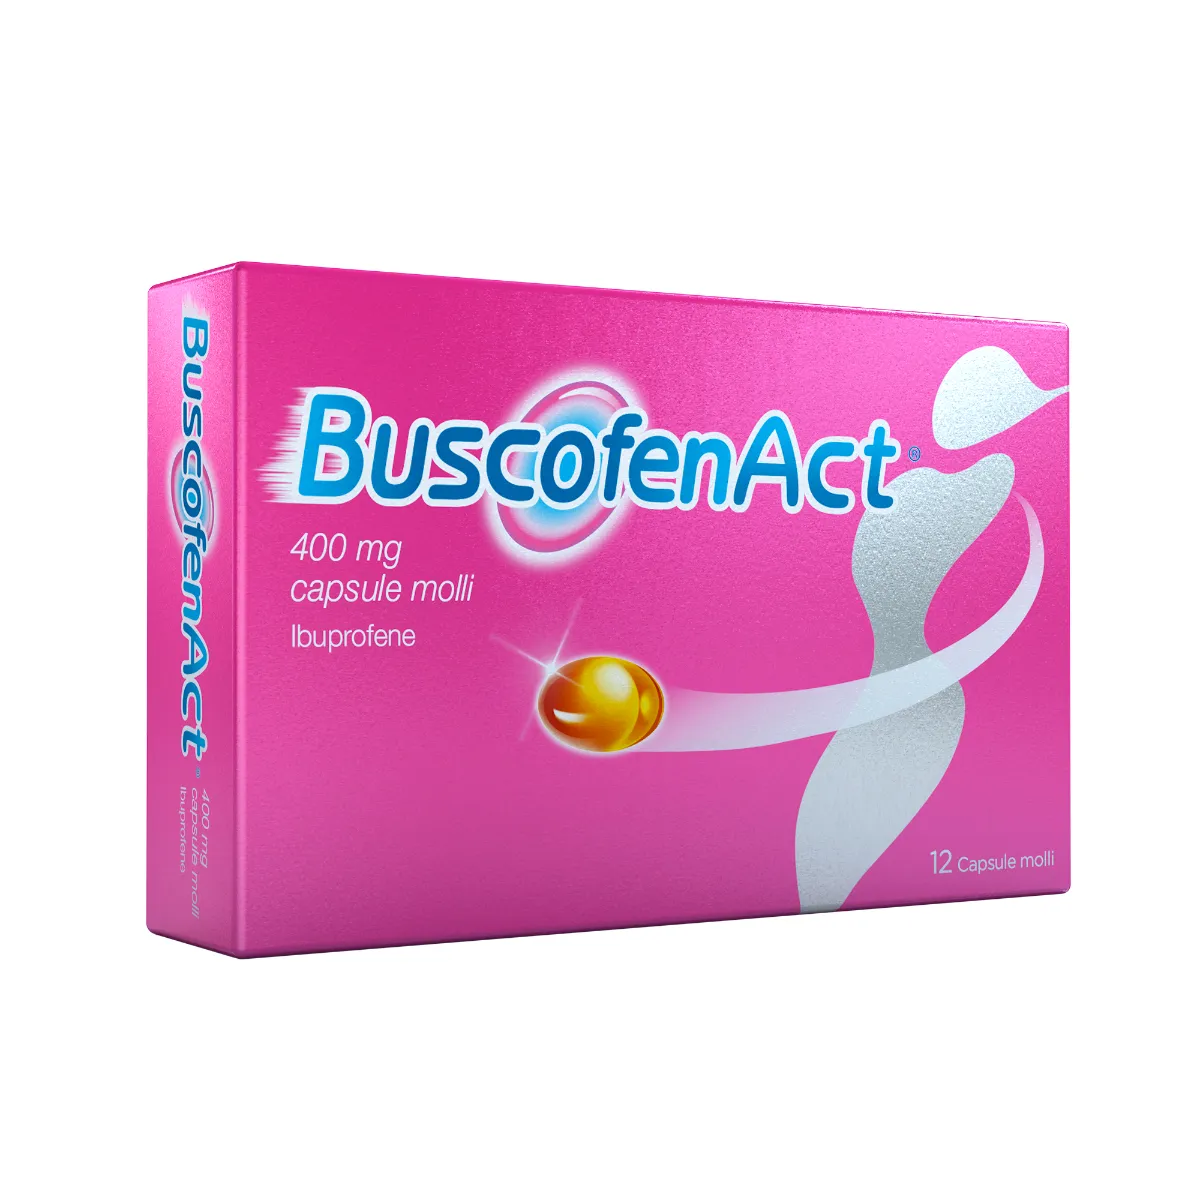 BuscofenAct 400 mg Ibuprofene 12 Capsule Molli Analgesico